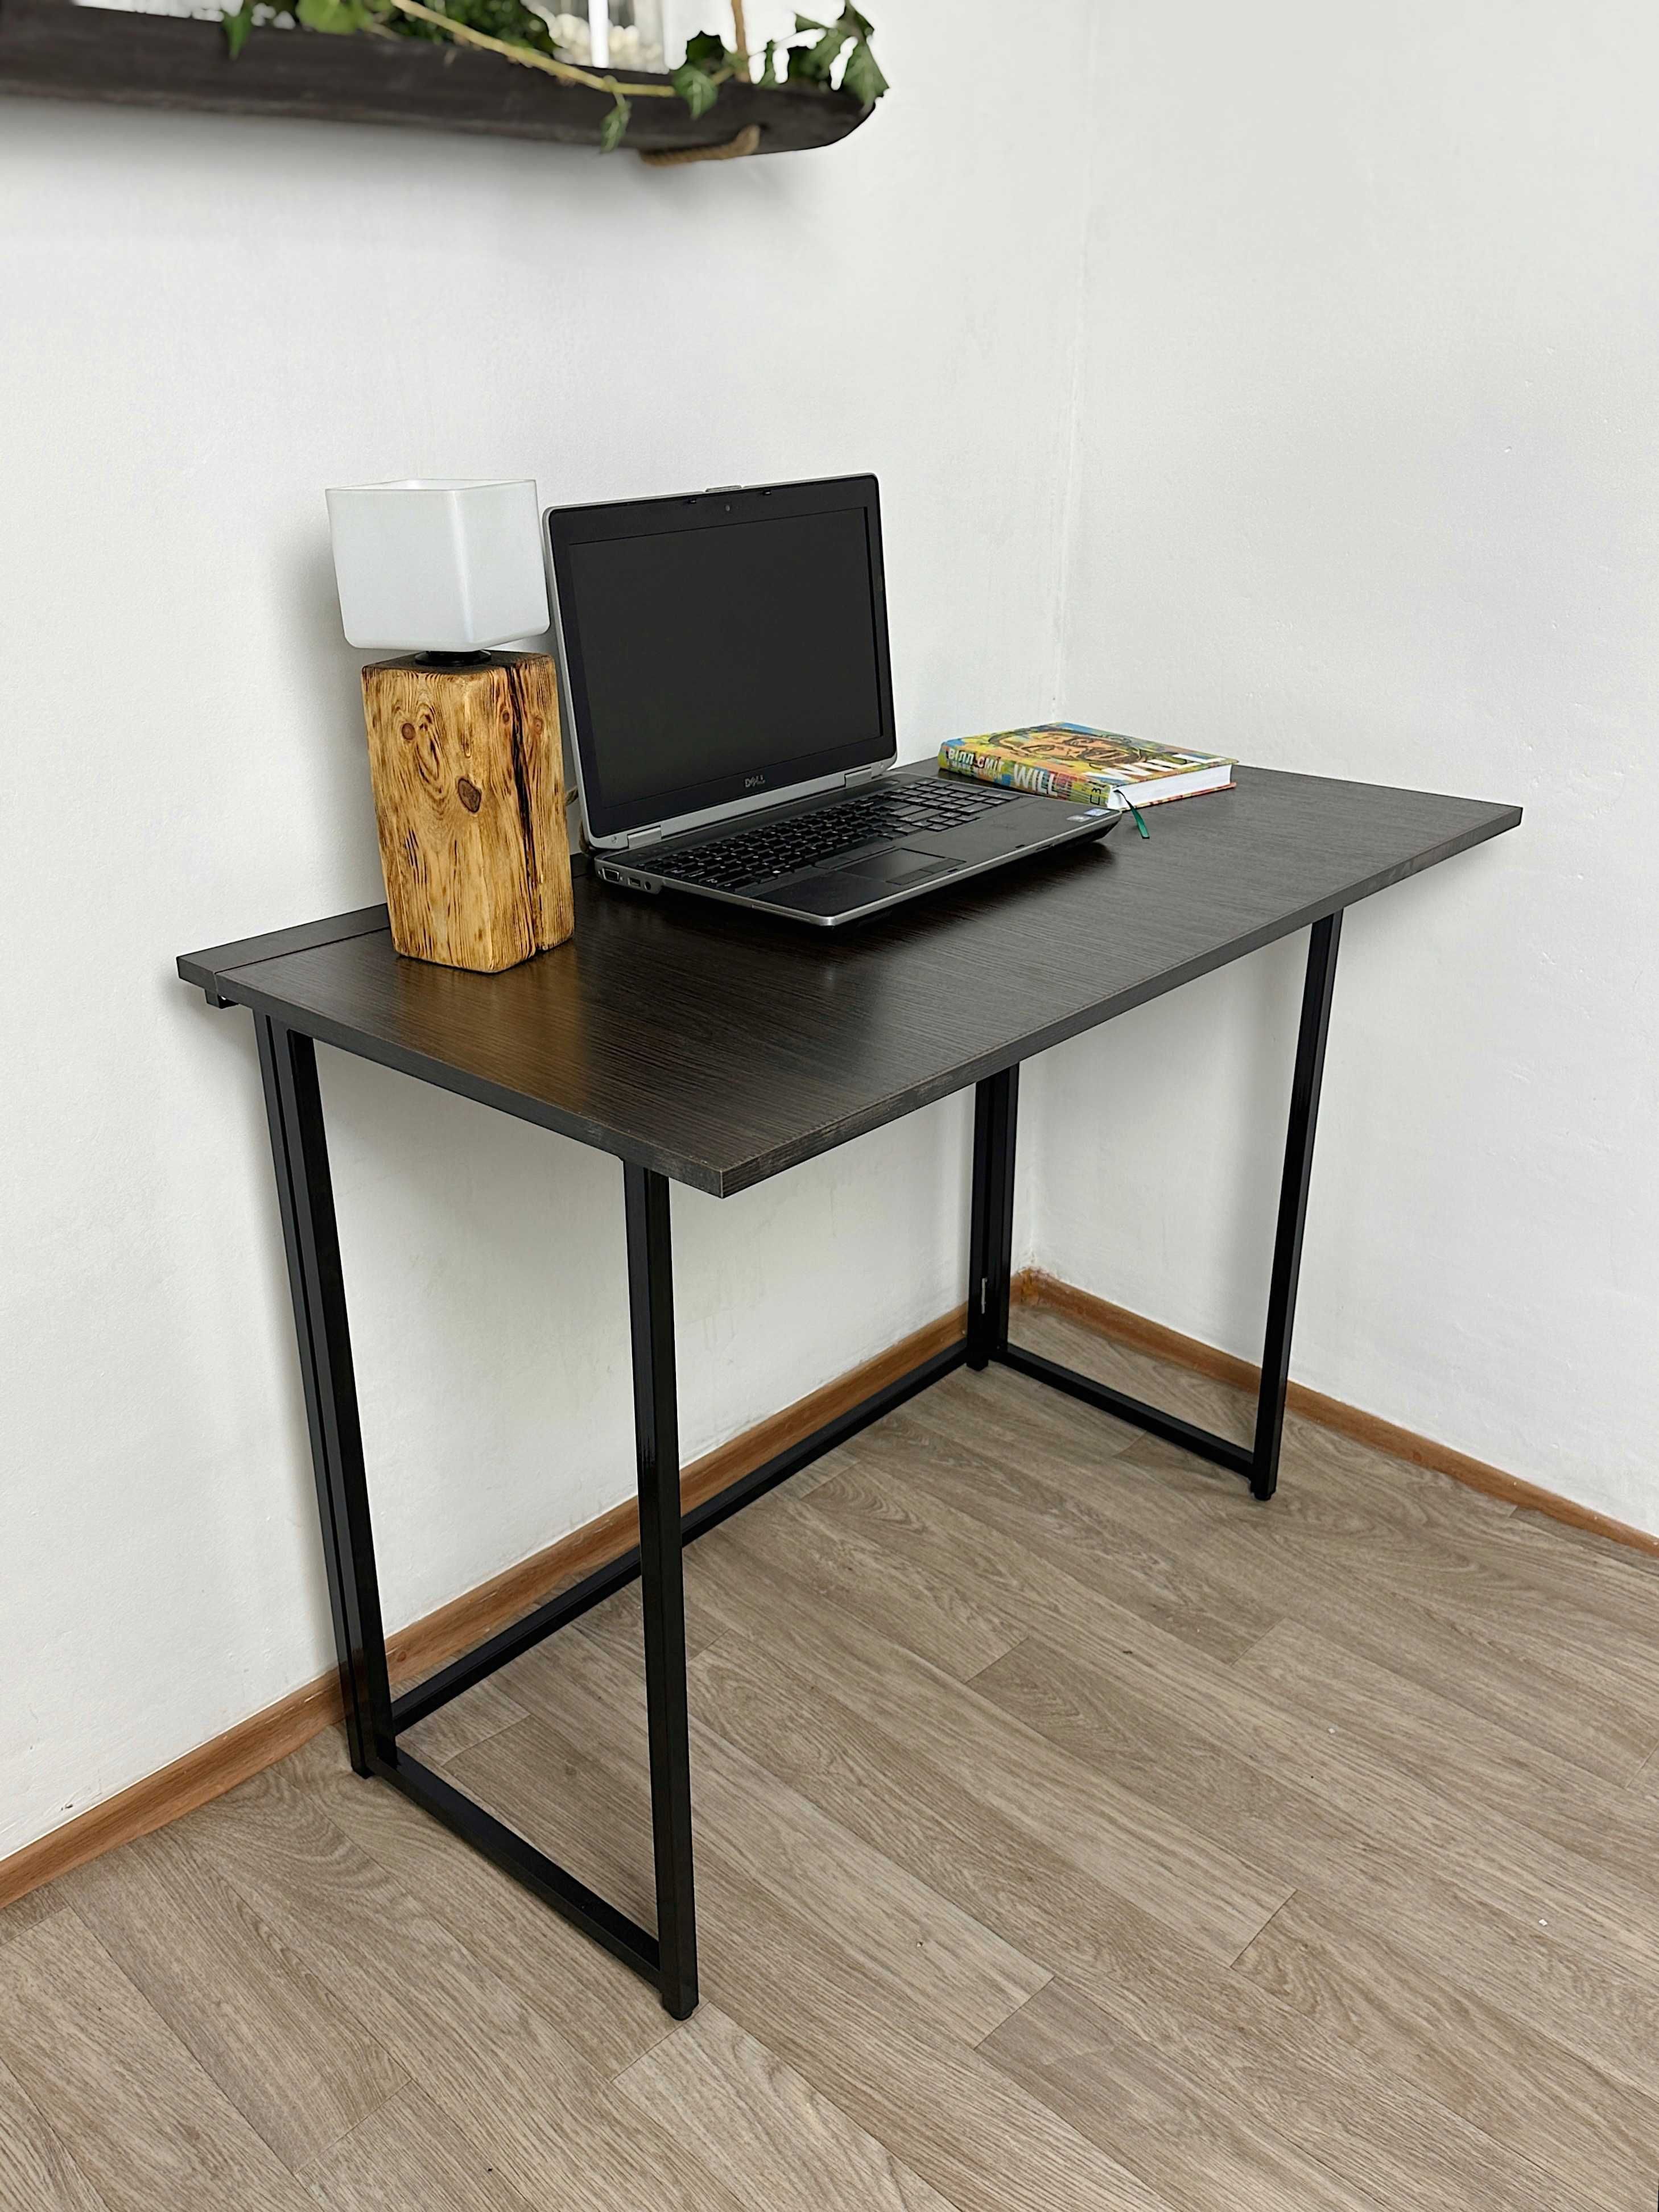 Складний стіл, офісний стіл, домашній стіл, стіл в кіманту, розкладний